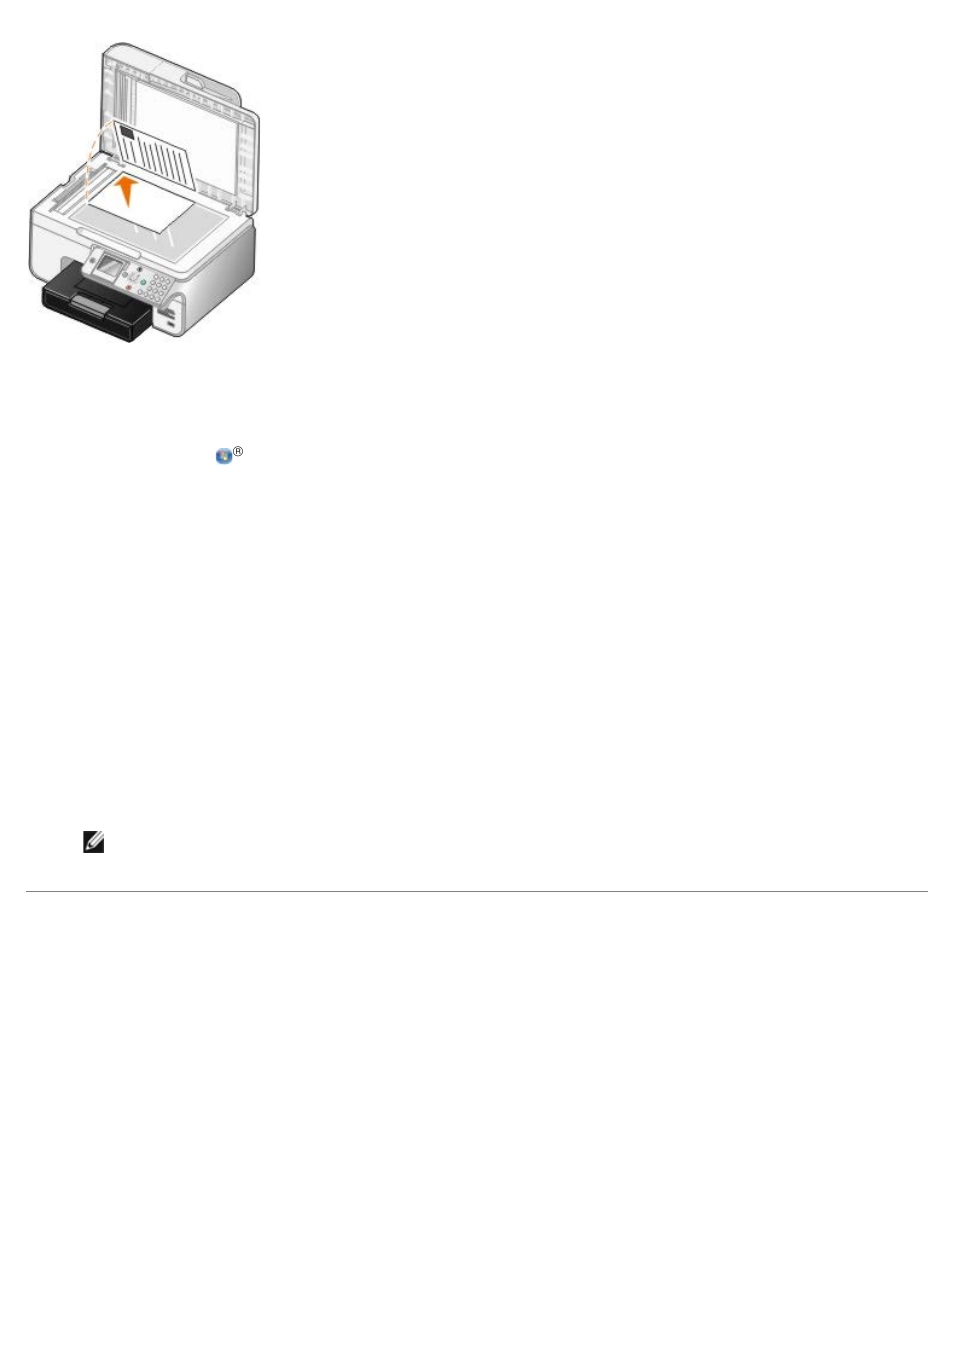 Ampliación o reducción de imágenes o documentos | Dell 966w All In One Wireless Photo Printer Manual del usuario | Página 128 / 138